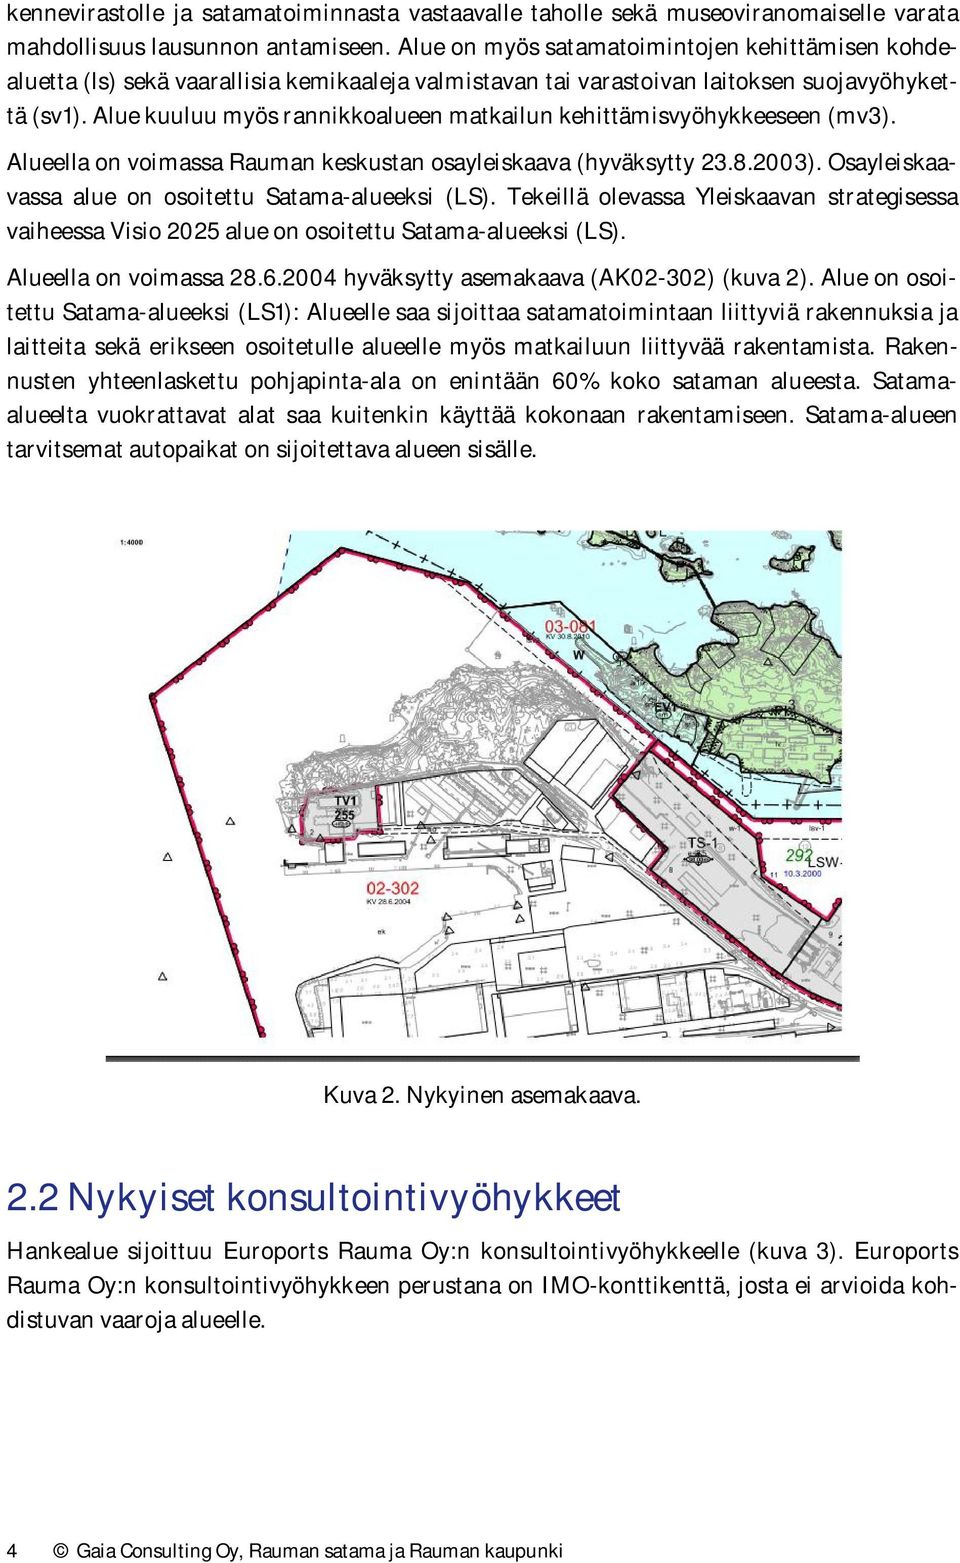 Alue kuuluu myös rannikkoalueen matkailun kehittämisvyöhykkeeseen (mv3). Alueella on voimassa Rauman keskustan osayleiskaava (hyväksytty 23.8.2003).